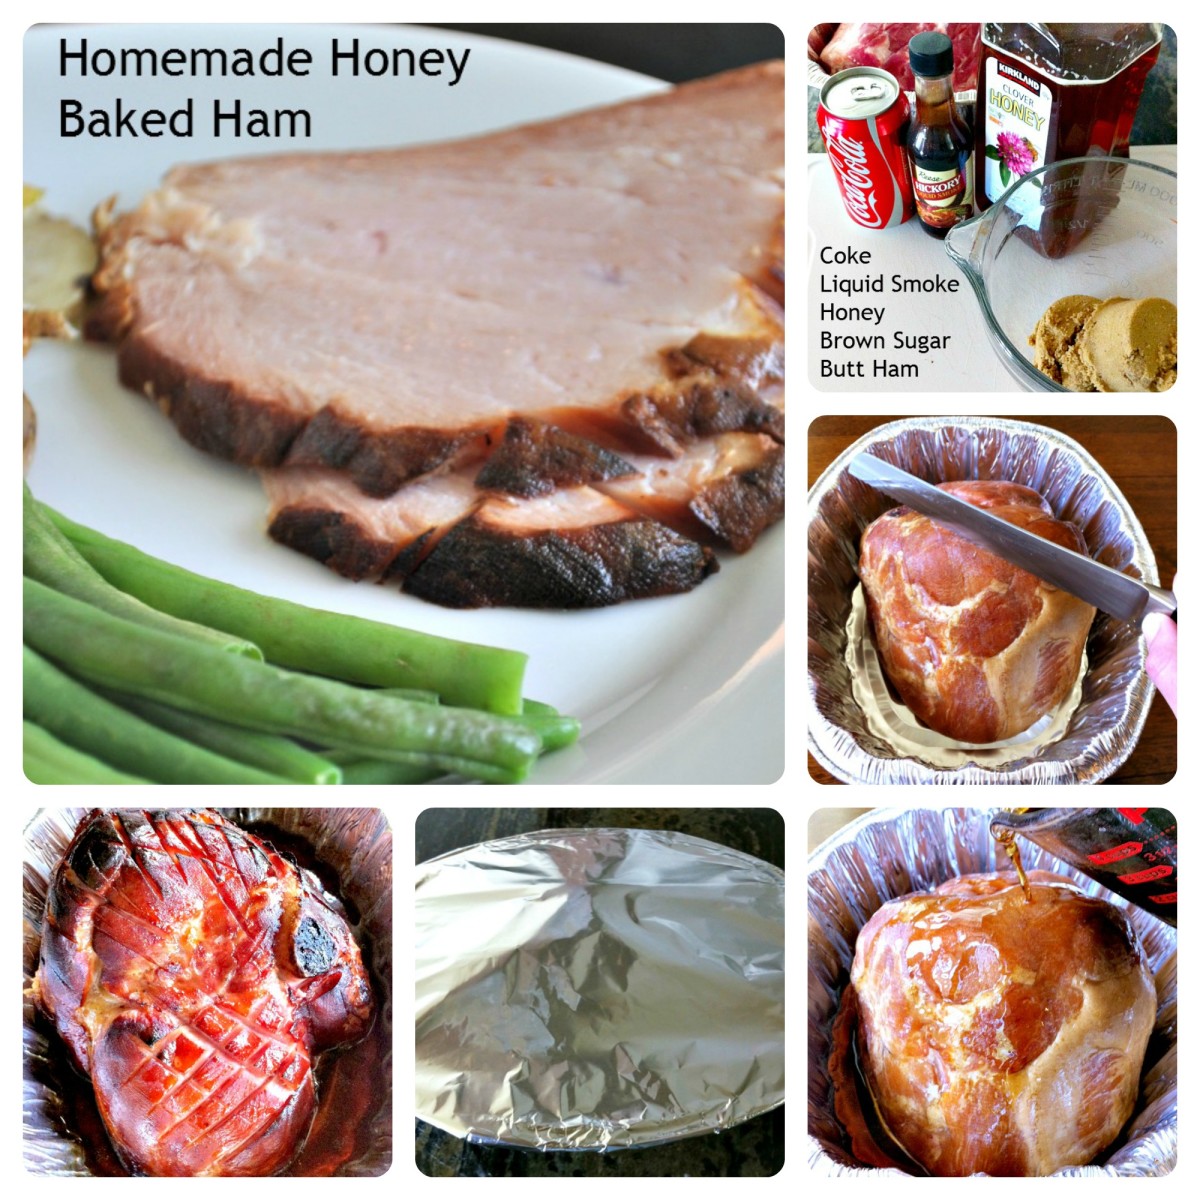 Homemade Honey Baked Ham Steps